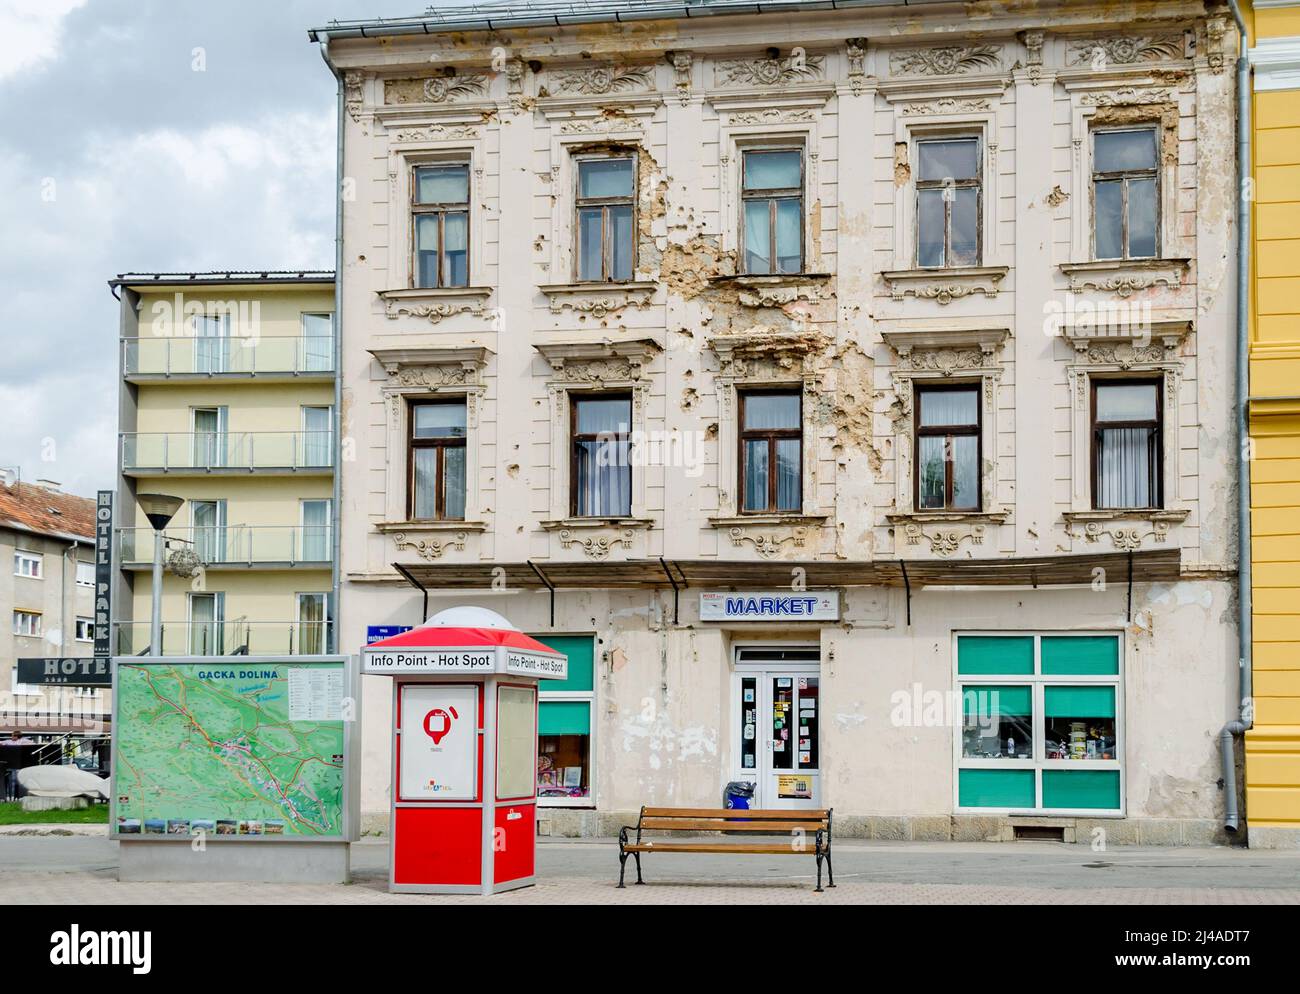 Altes Gebäude in einer Stadt von Kroatien. Fassade voller Kugellöcher aus der Zeit des Kroatischen Unabhängigkeitskrieges. Stockfoto